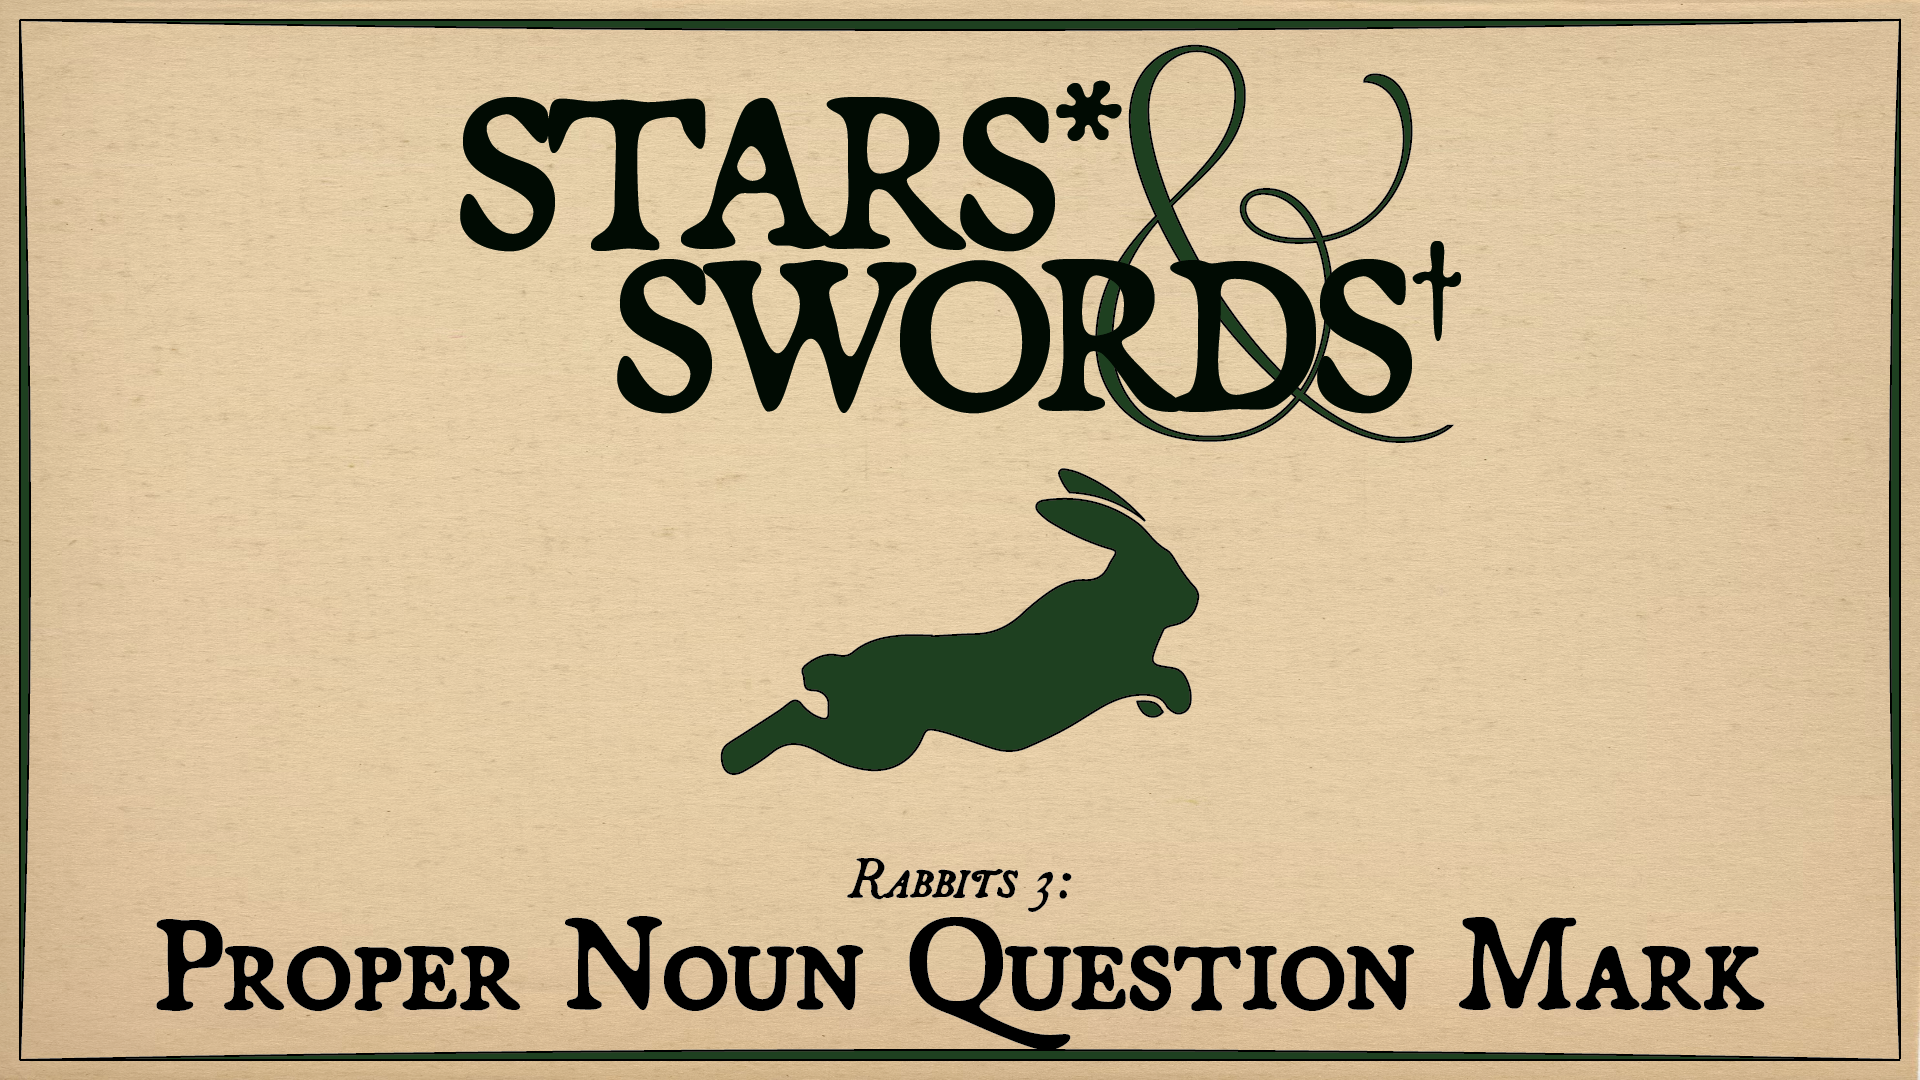 Rabbits 3: Proper Noun Question Mark